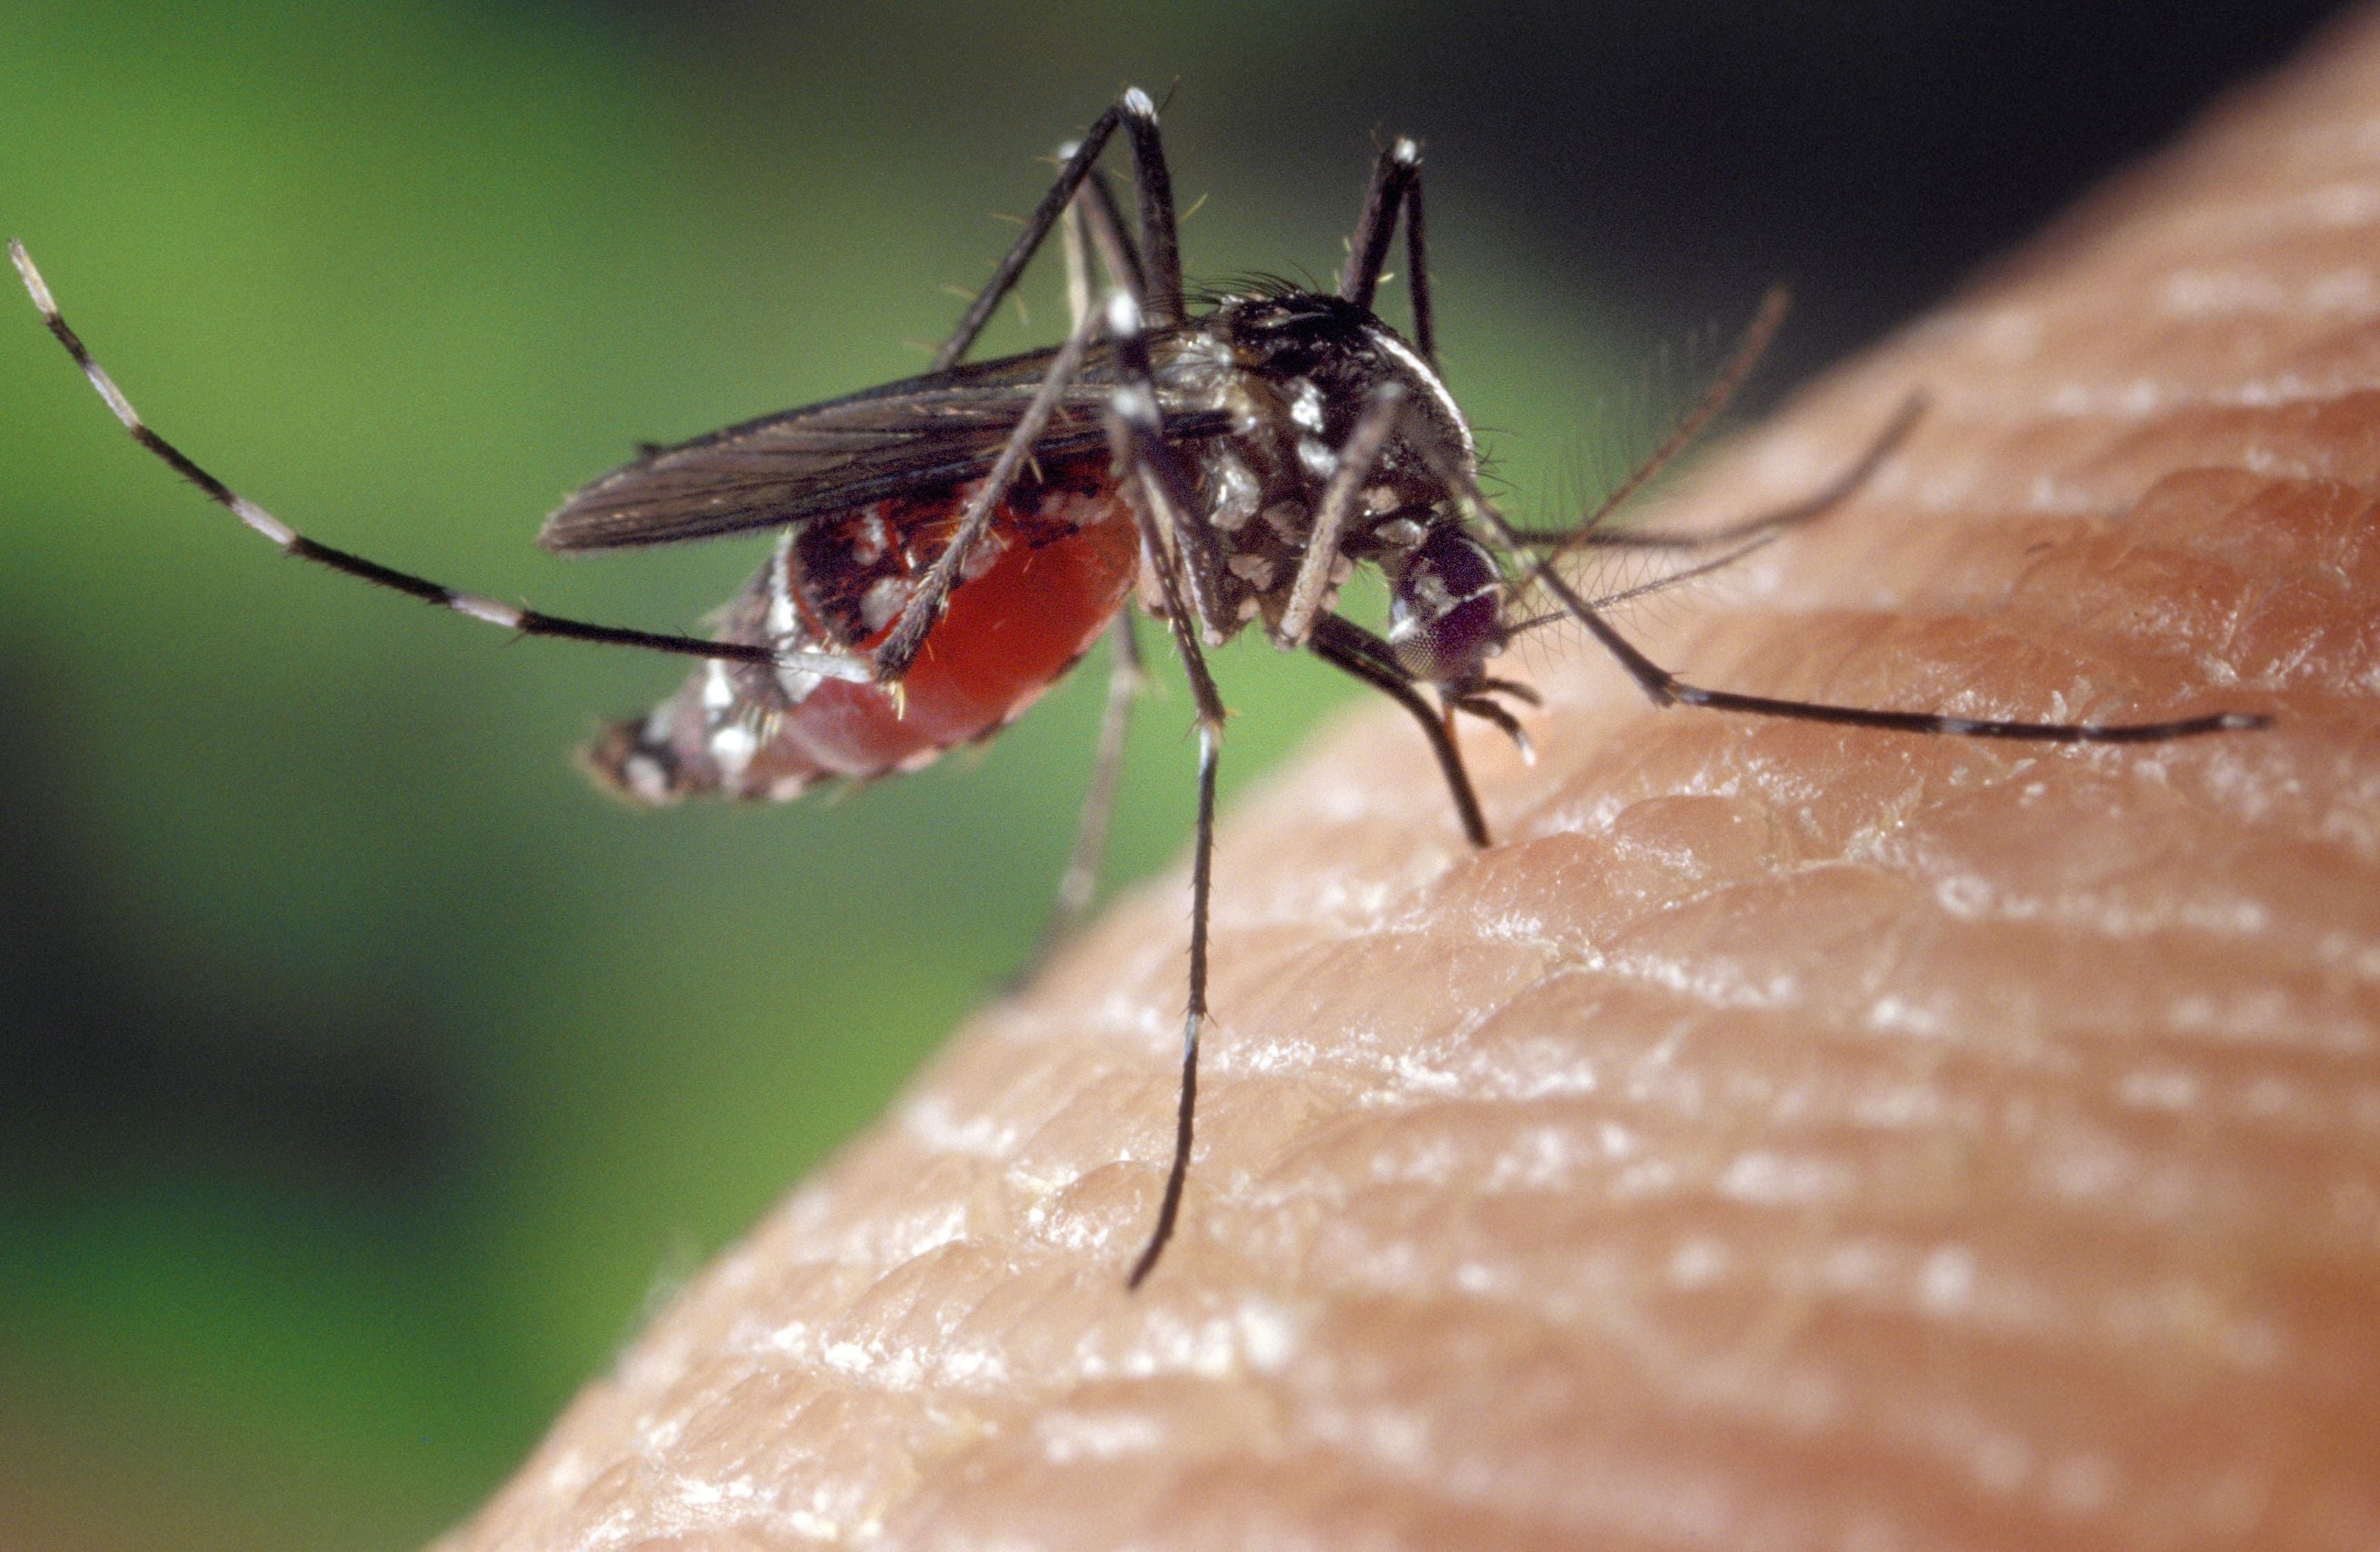 mosquisto da dengue de perto numa superfície 